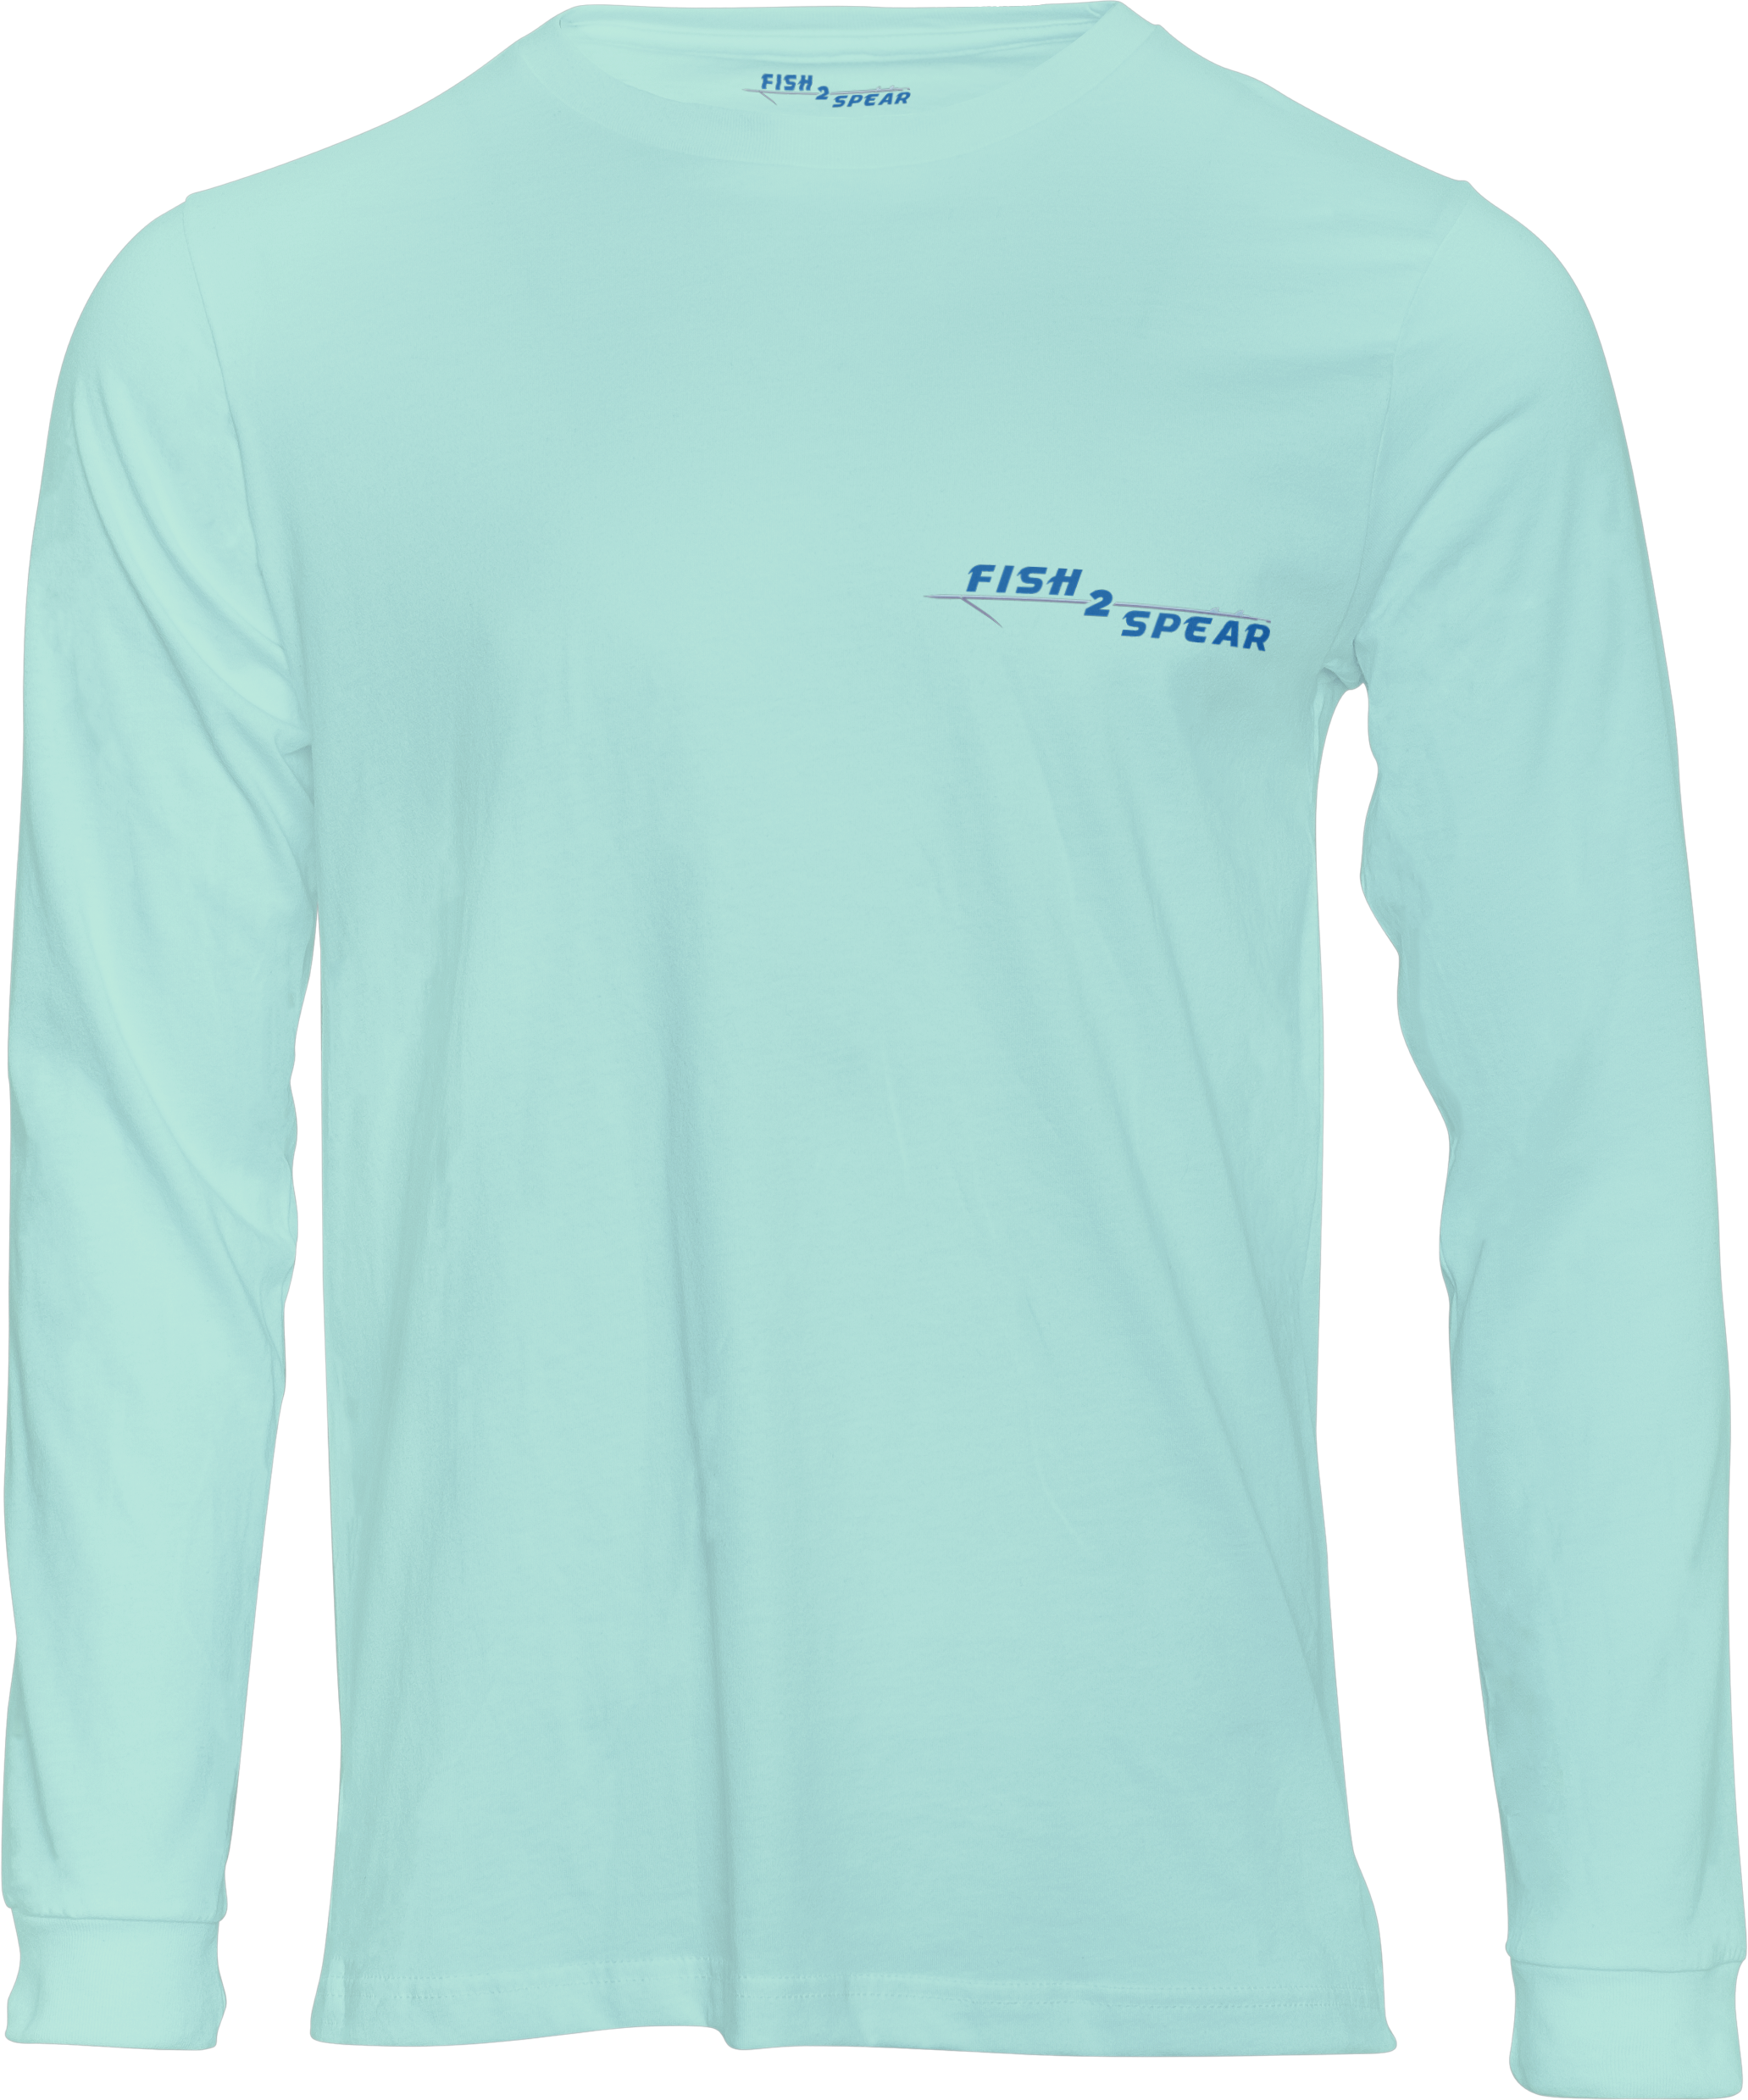 Fierce Kingfish - Long Sleeve Fishing T-shirt